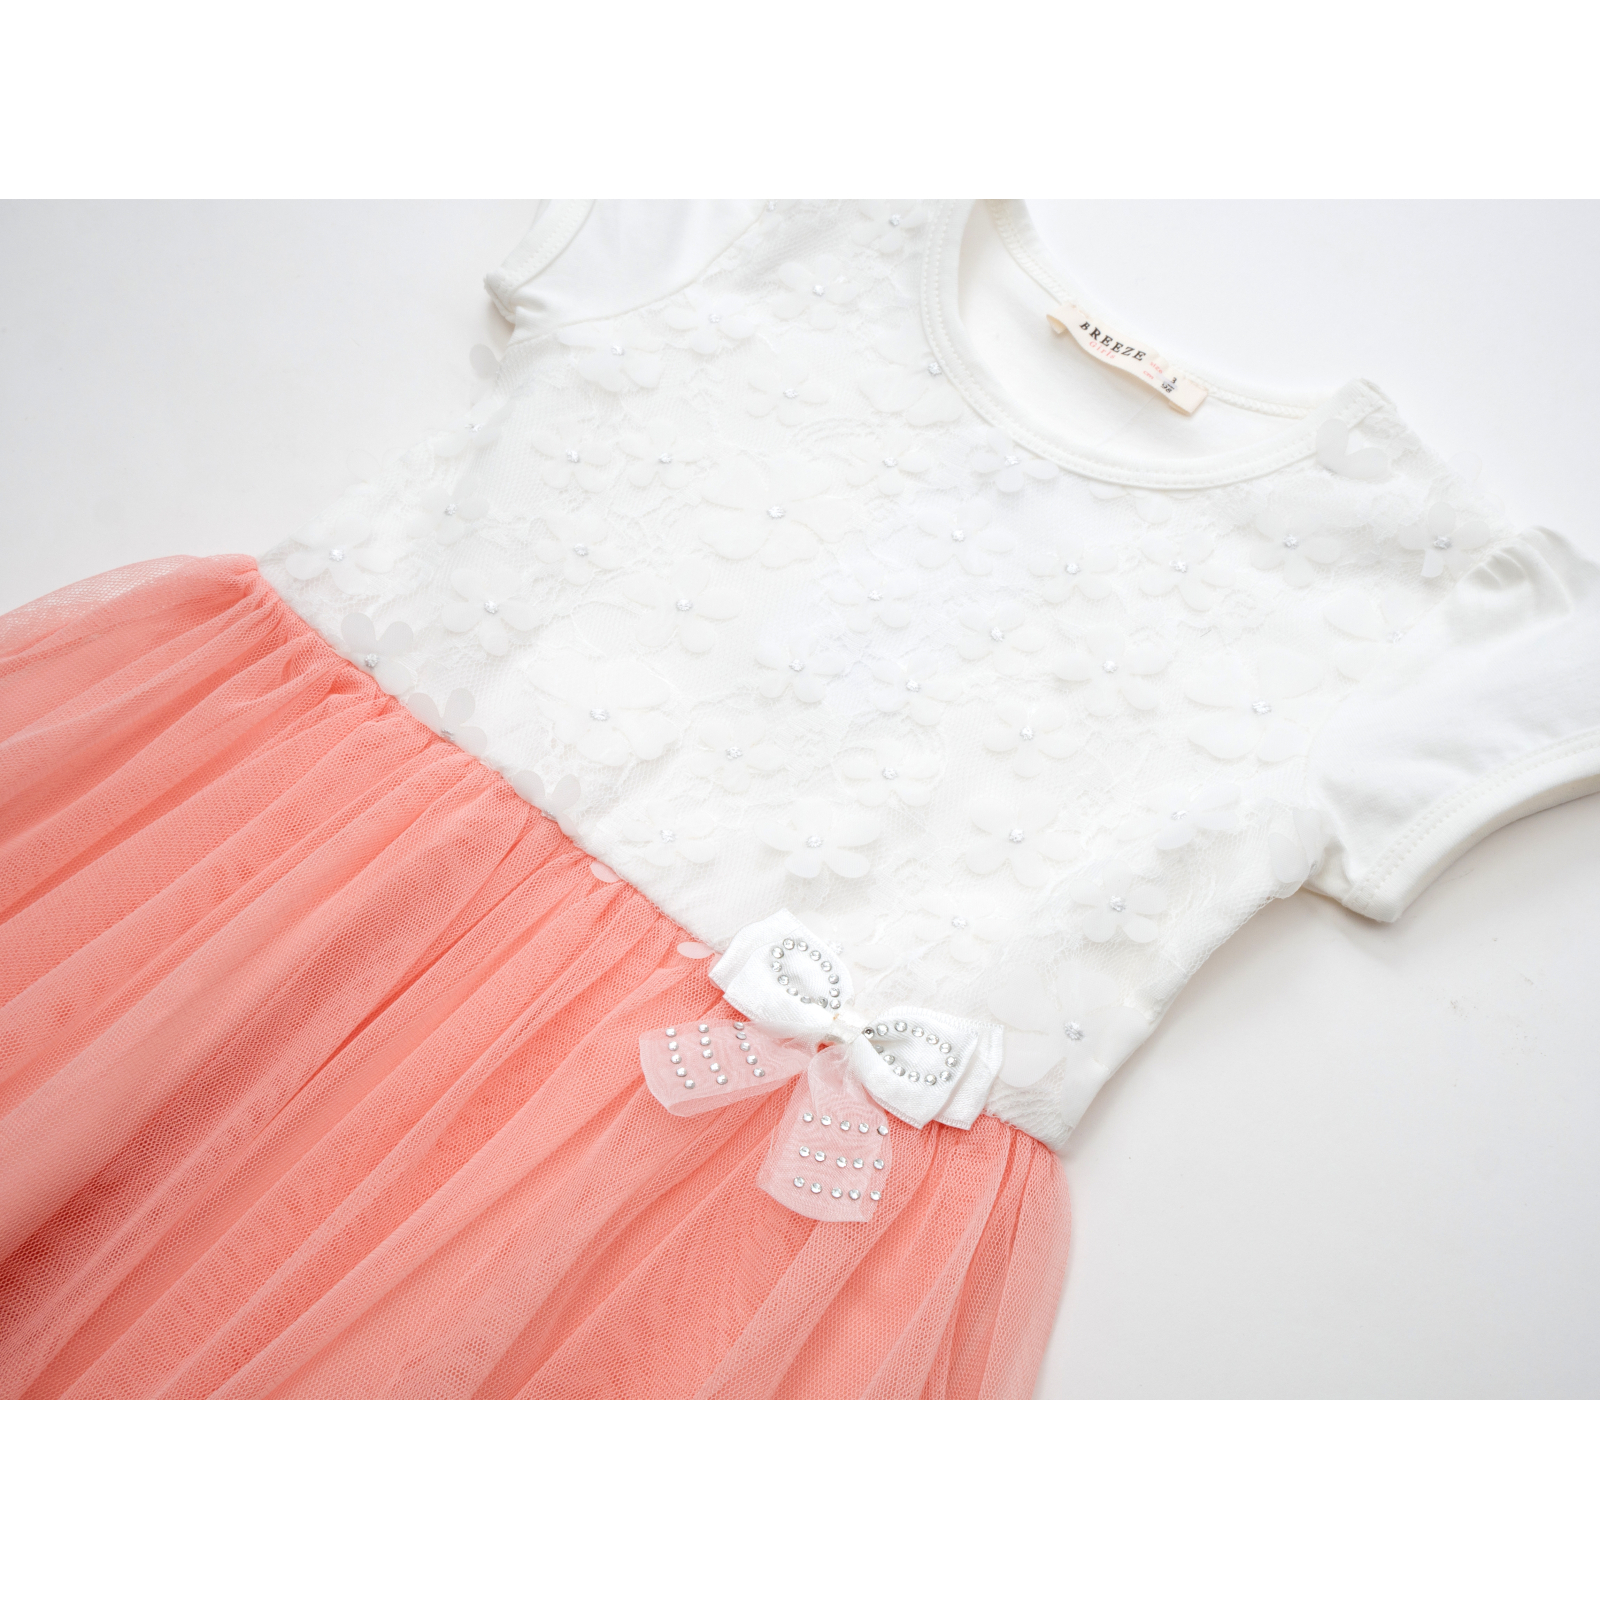 Платье Breeze с фатиновой юбкой (10926-92G-peach) изображение 3